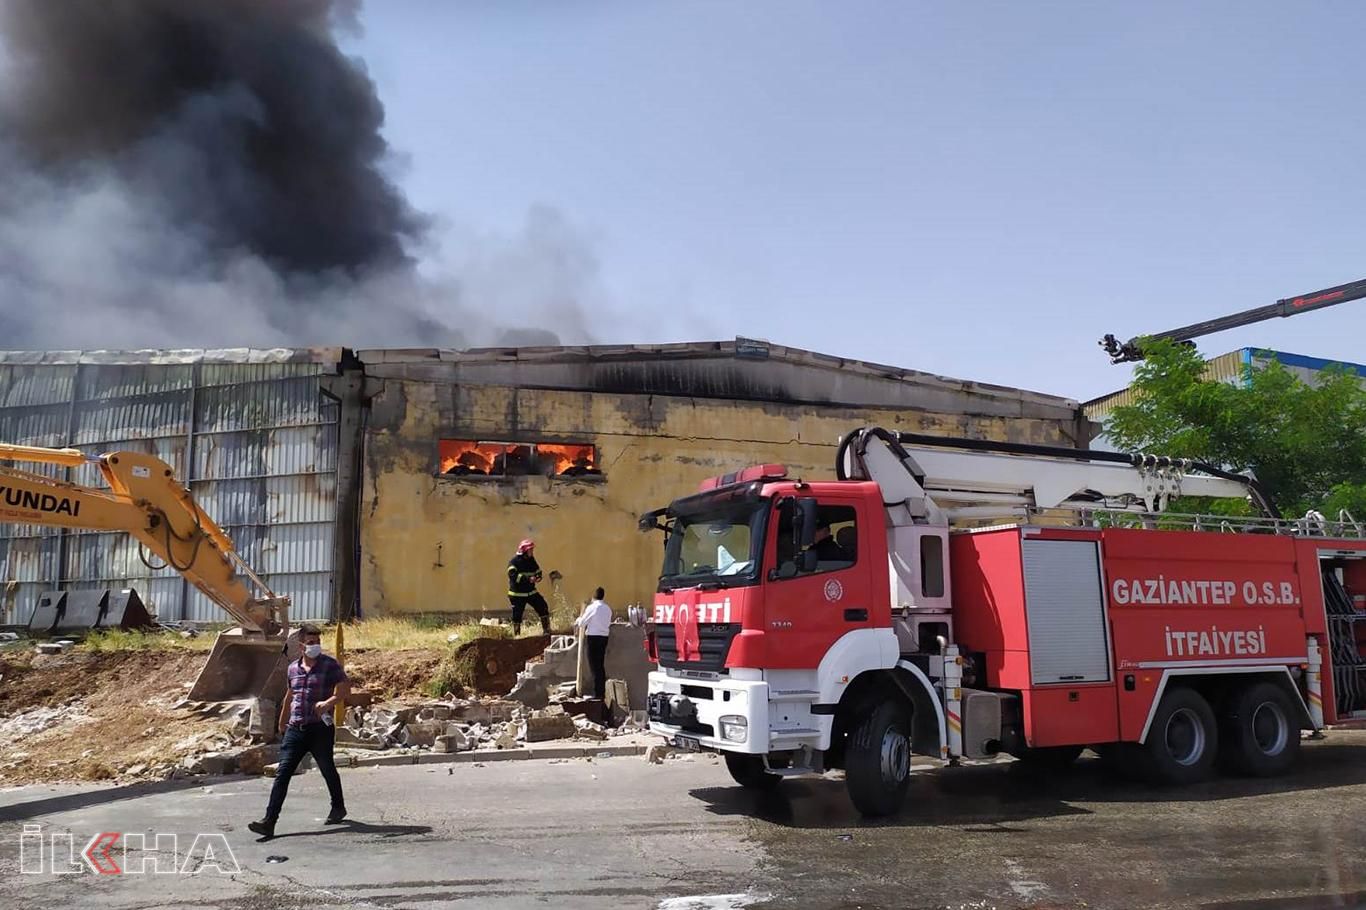 Gaziantep'te elyaf fabrikasında çıkan yangın kontrol altına alındı